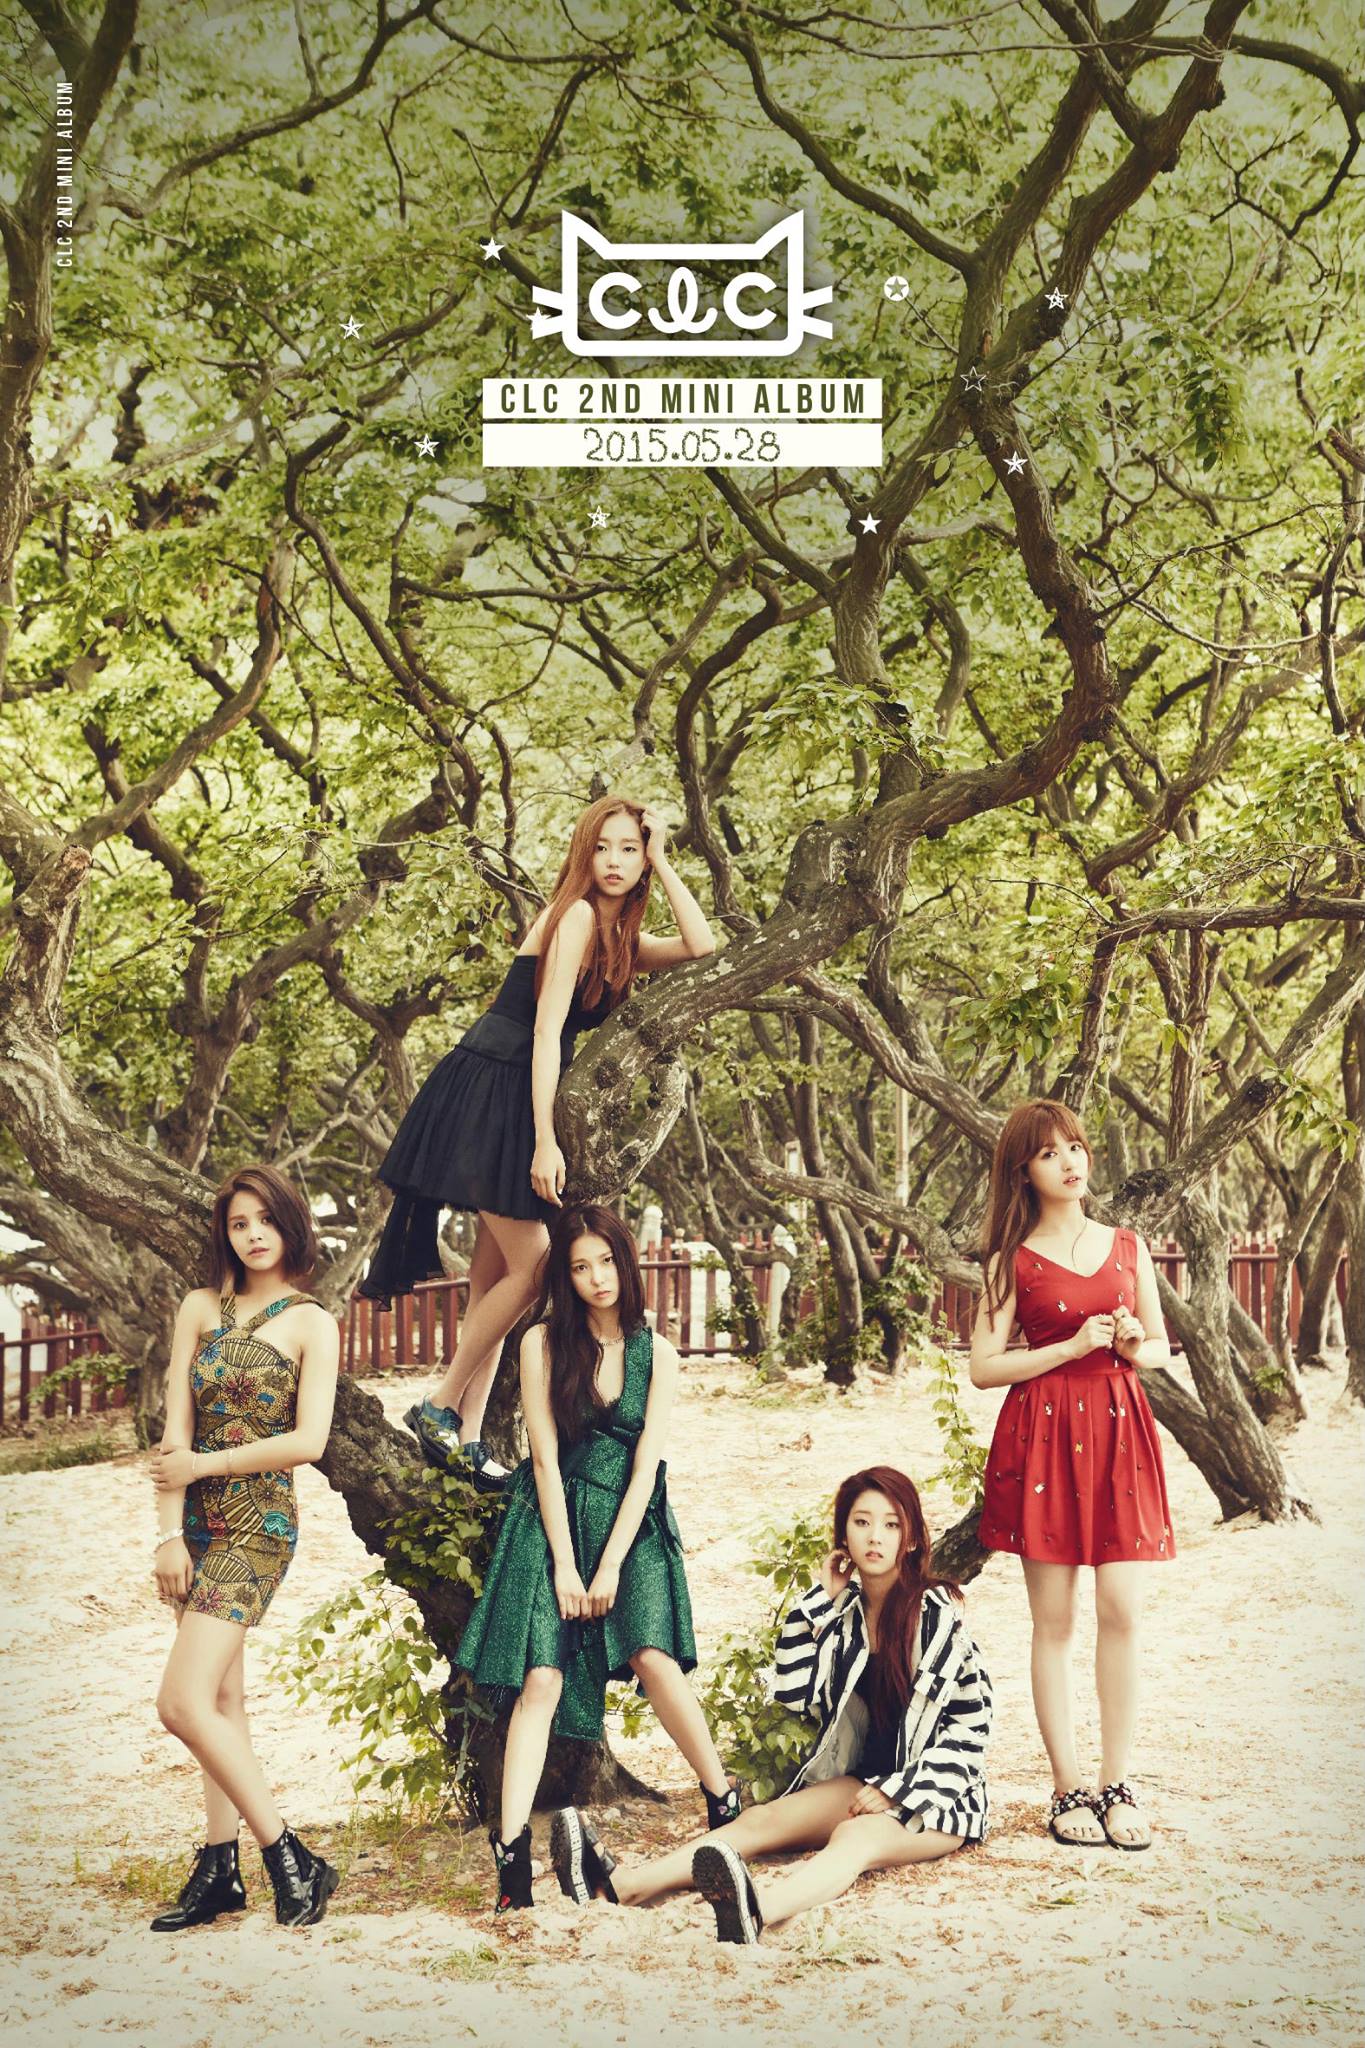 CLC 2nd mini album